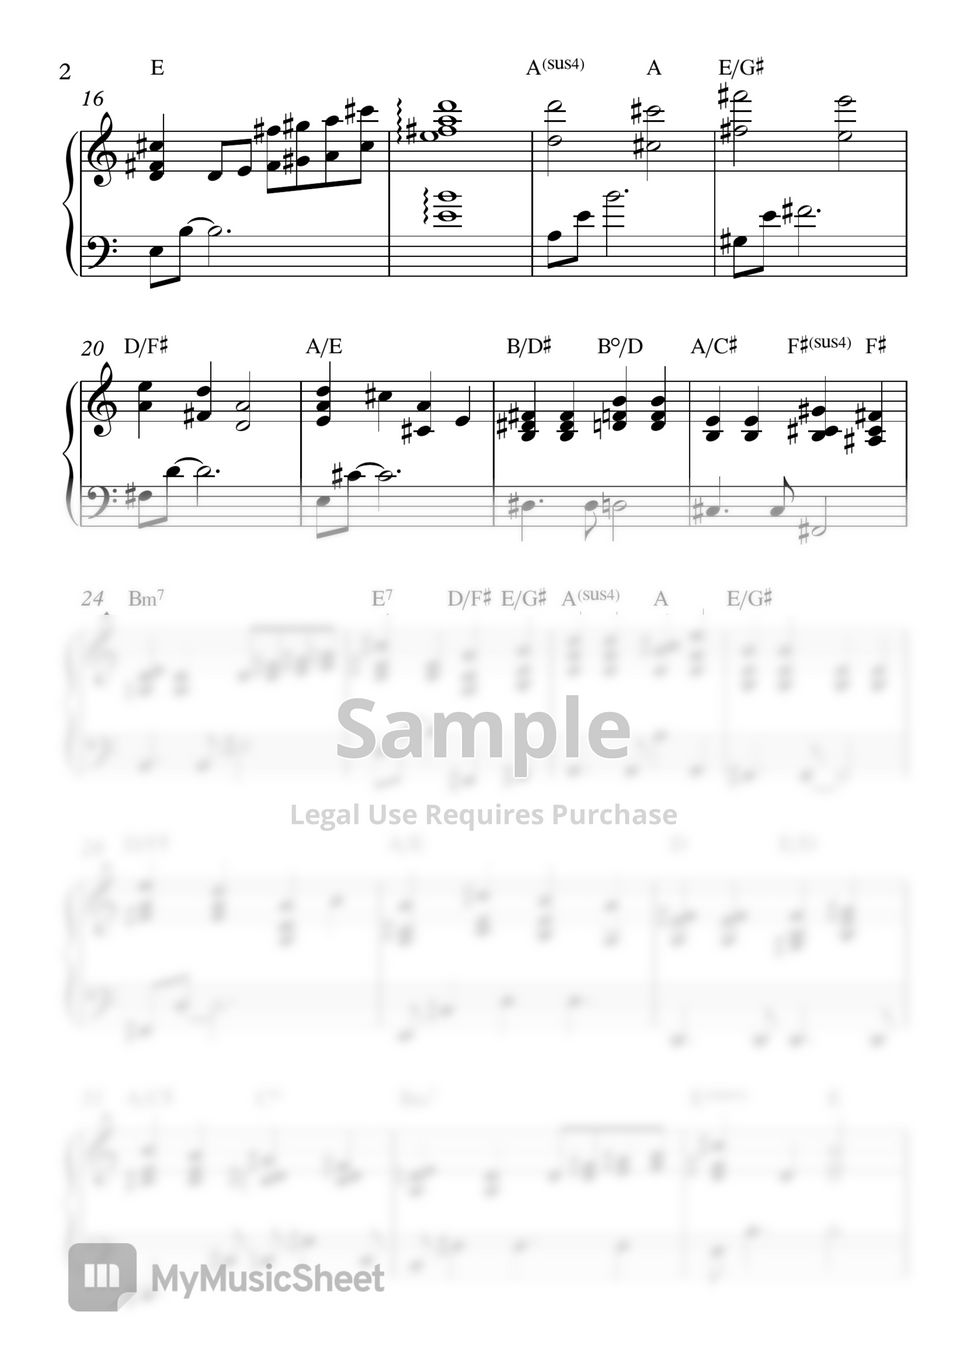 성시경의 킬링보이스 1 - 성시경의 킬링보이스 1 (피아노 양손악보) by rlathdud